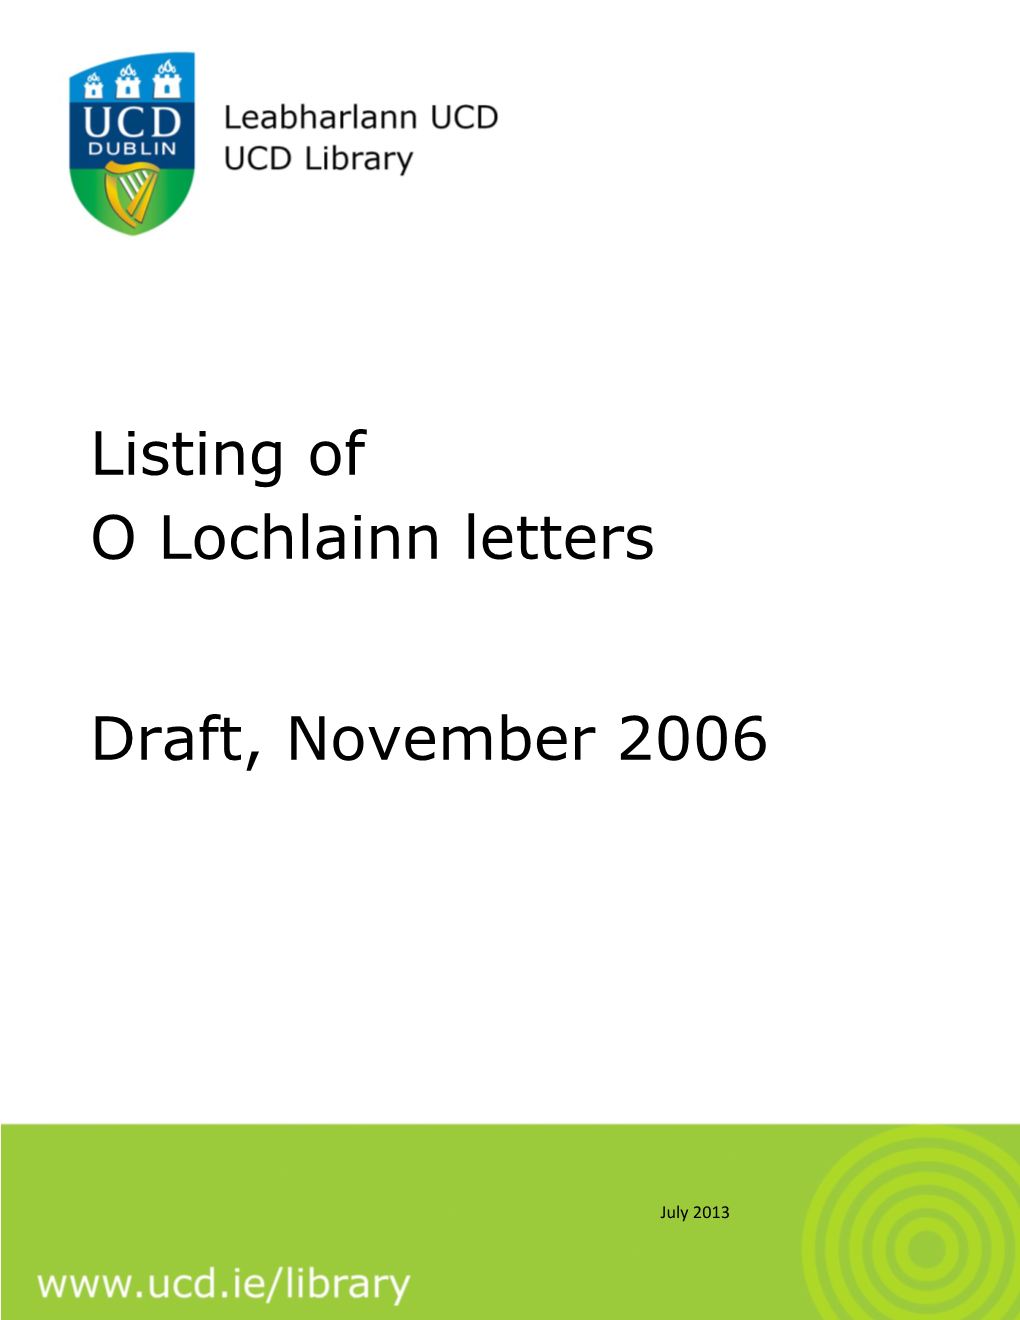 Listing of O Lochlainn Letters Draft, November 2006